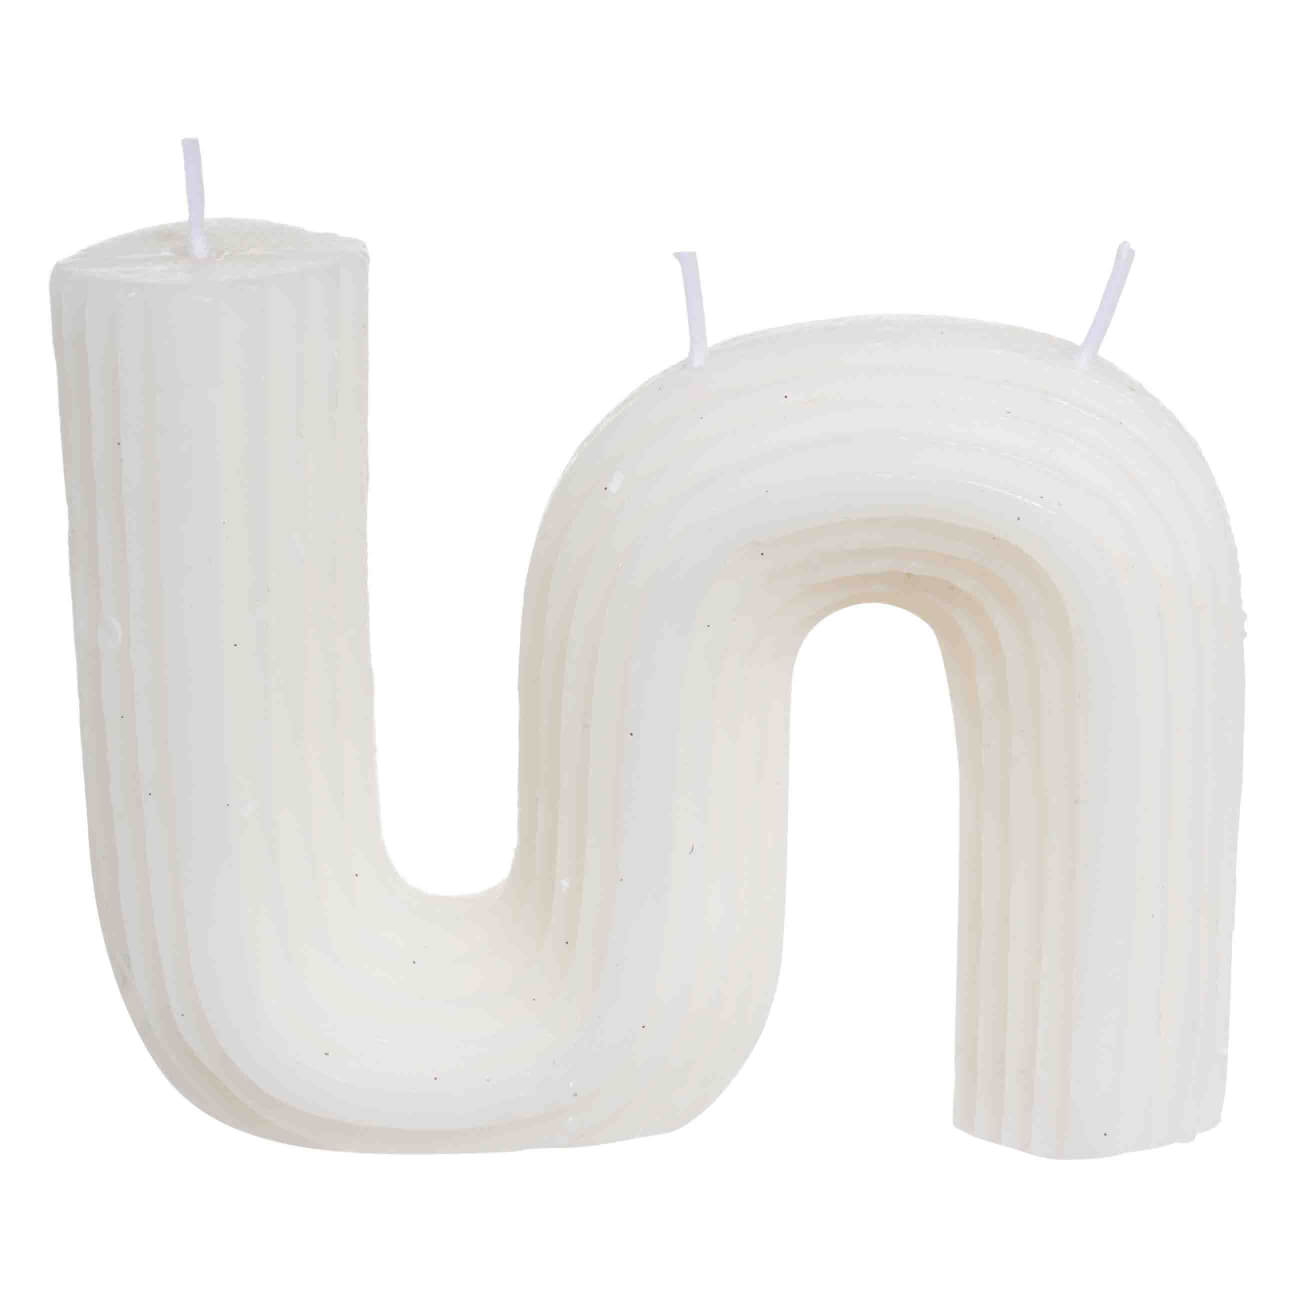 Свеча, 9 см, рифленая, белая, Зигзаг, Ribbed candle свеча классическая 7х12 см белая